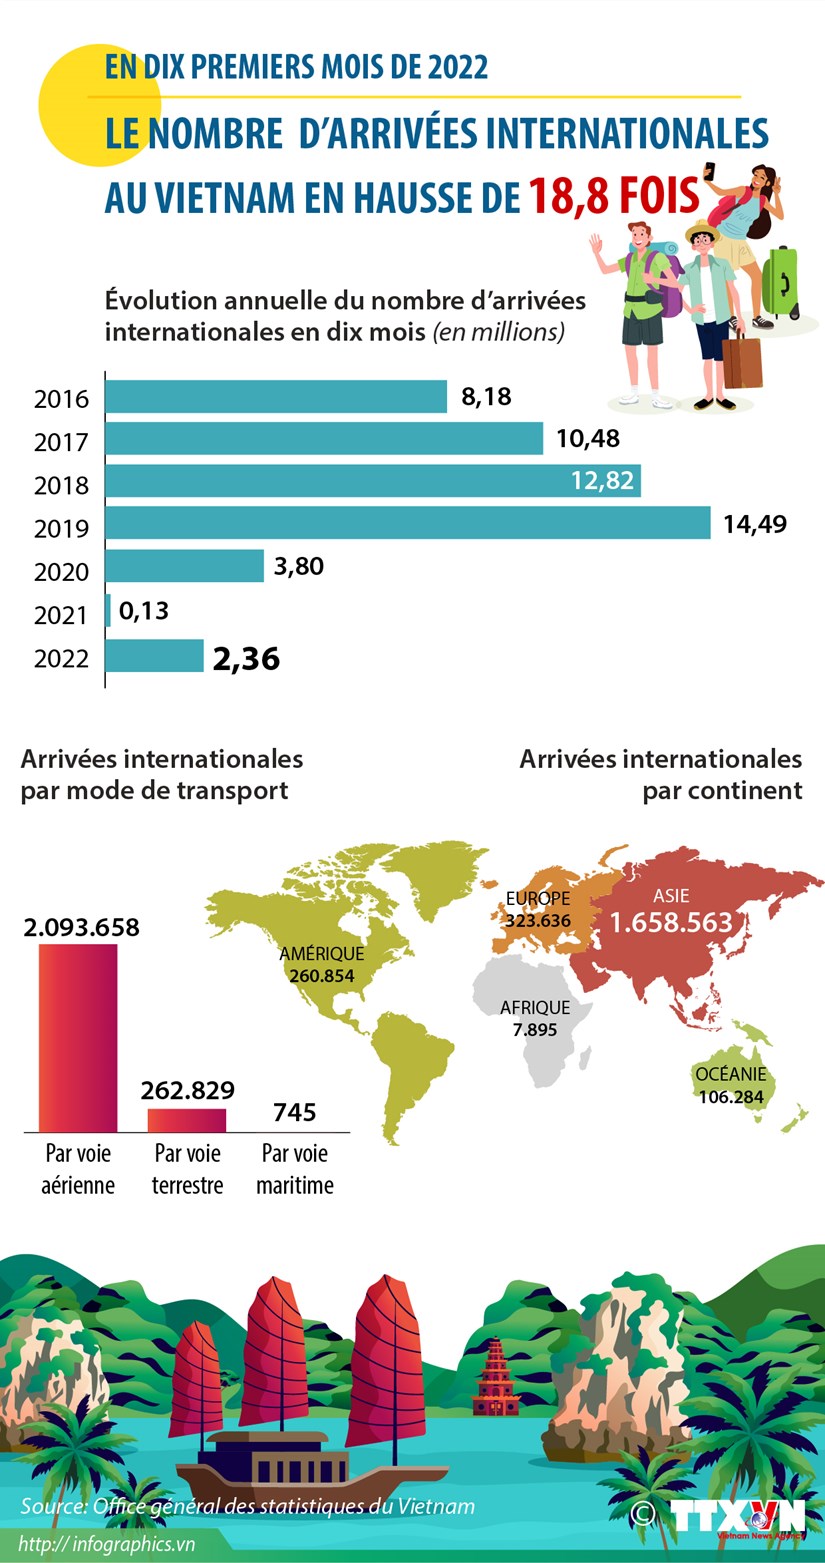 Le nombre d’arrivees internationales au Vietnam en hausse de 18,8 fois en dix mois hinh anh 1